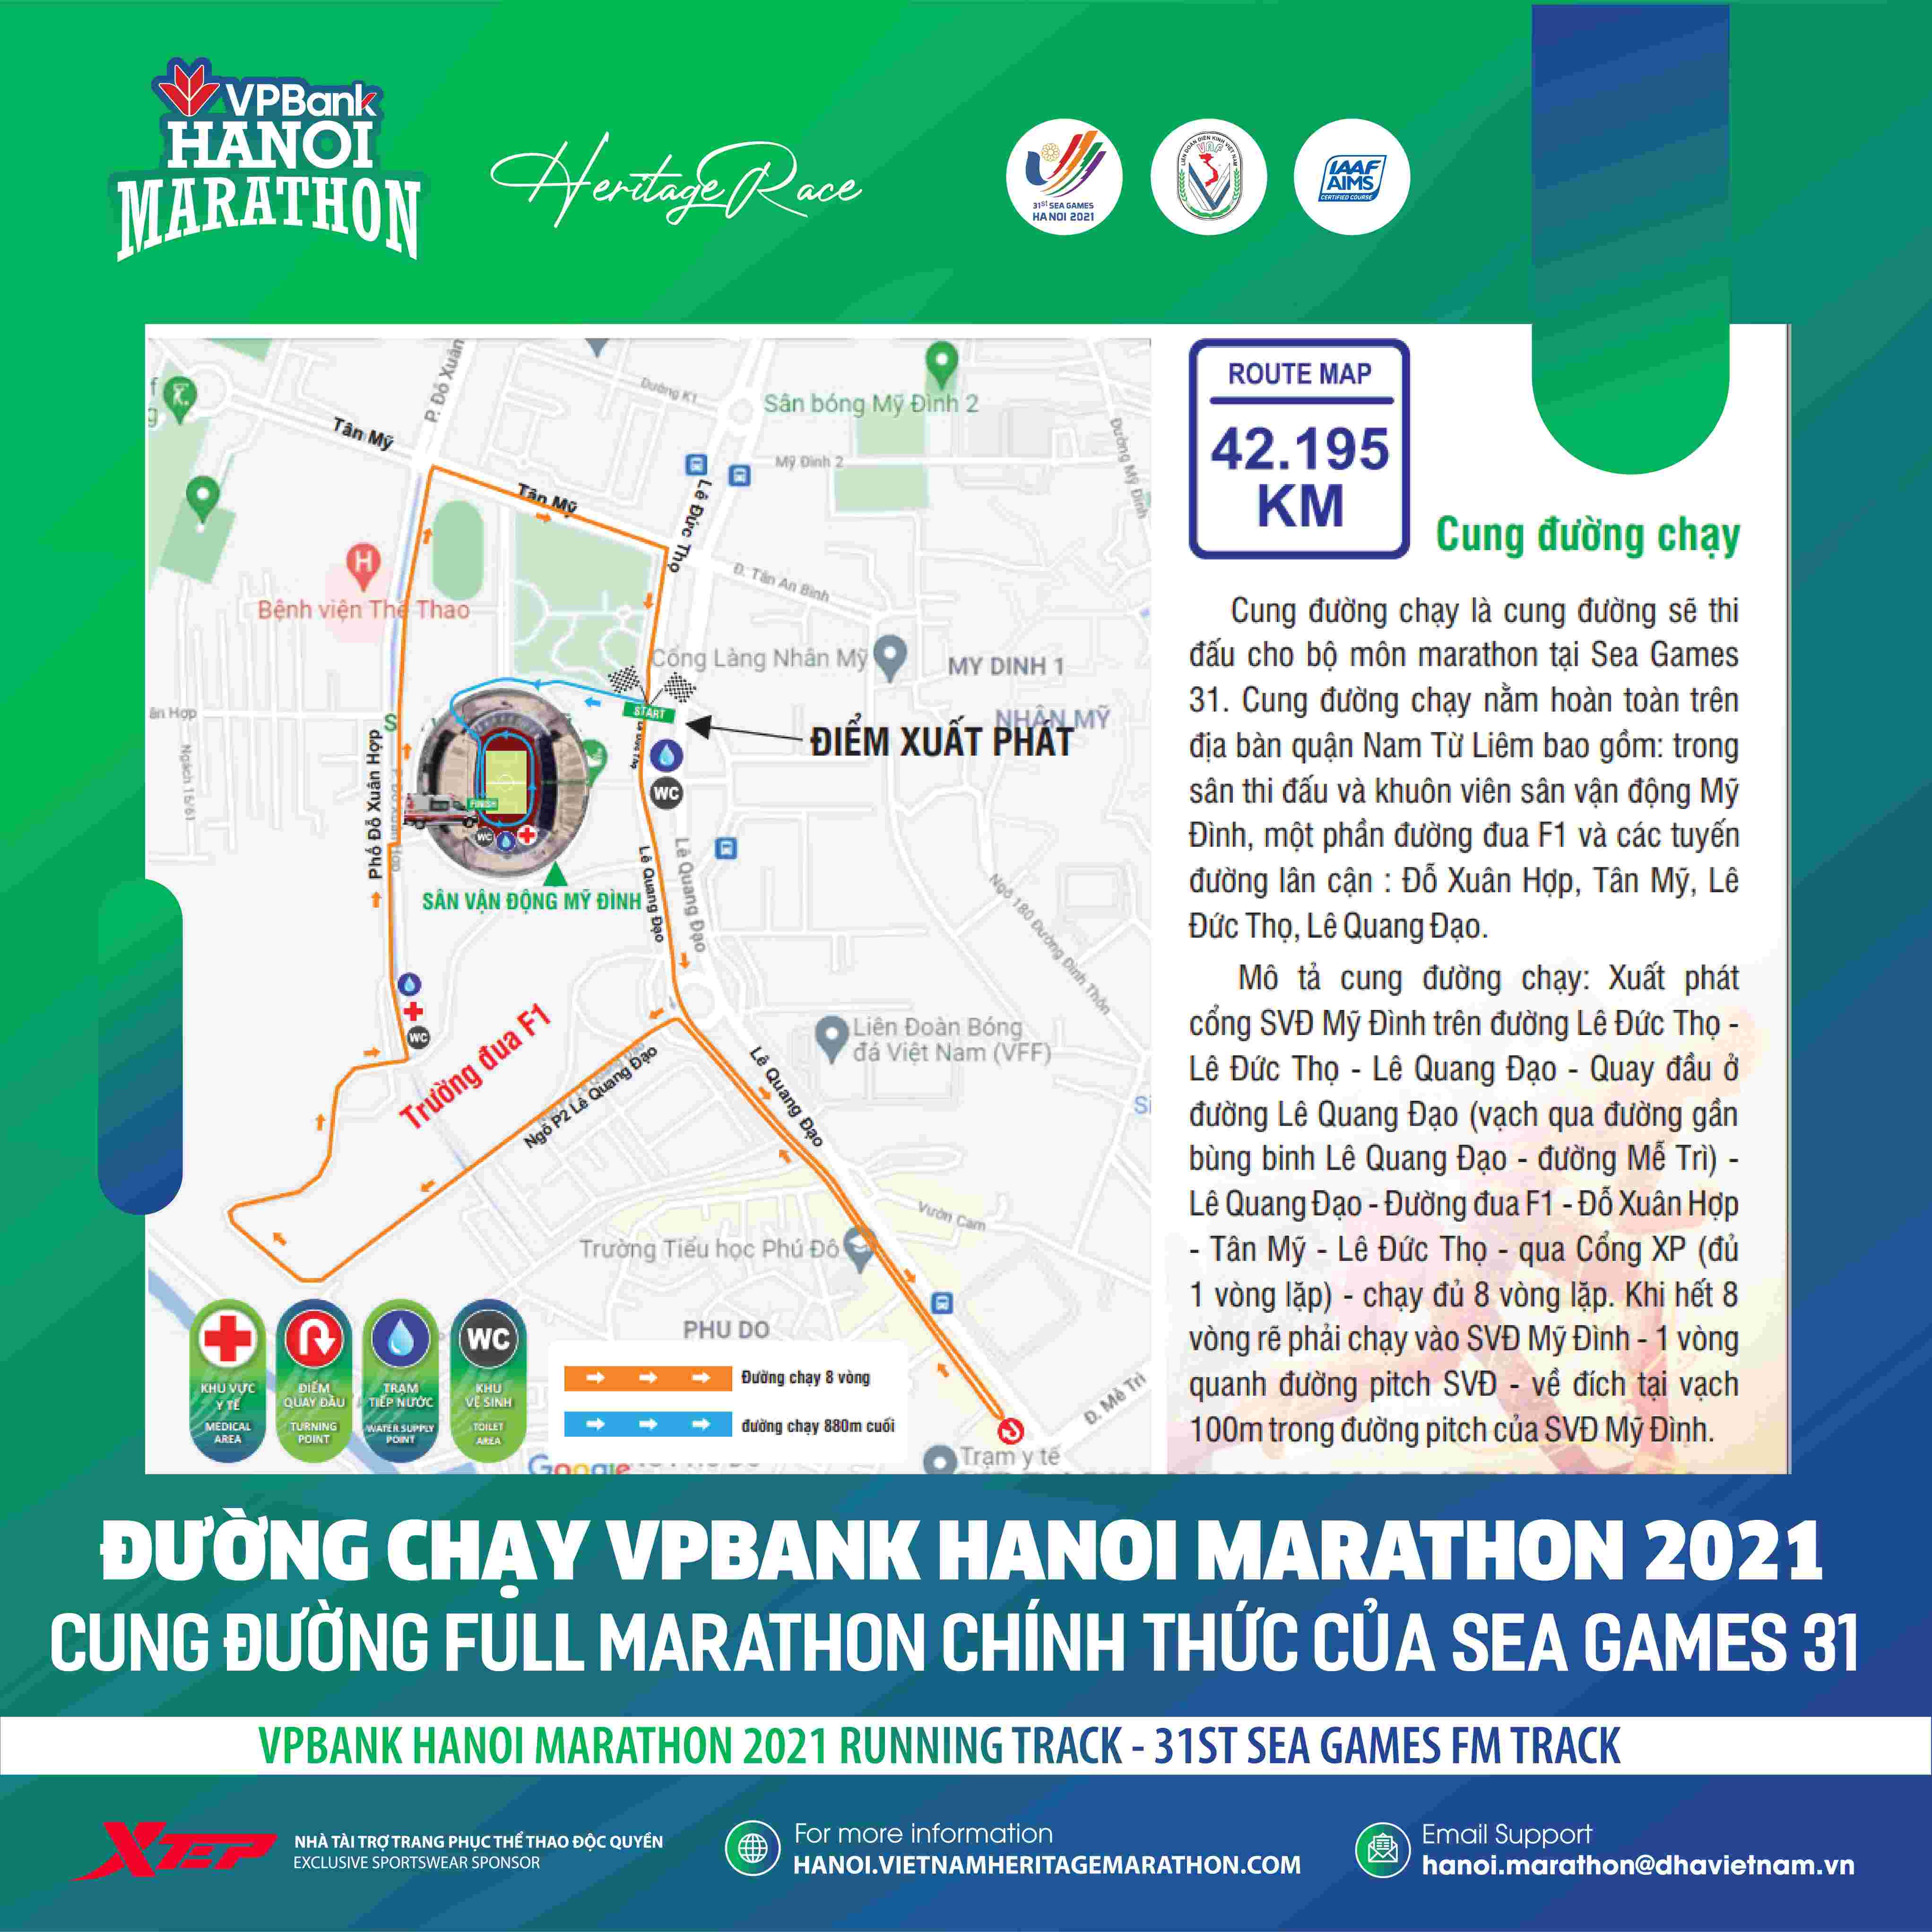 VPBank Hanoi Marathon 2021 Designs Unique Running Track